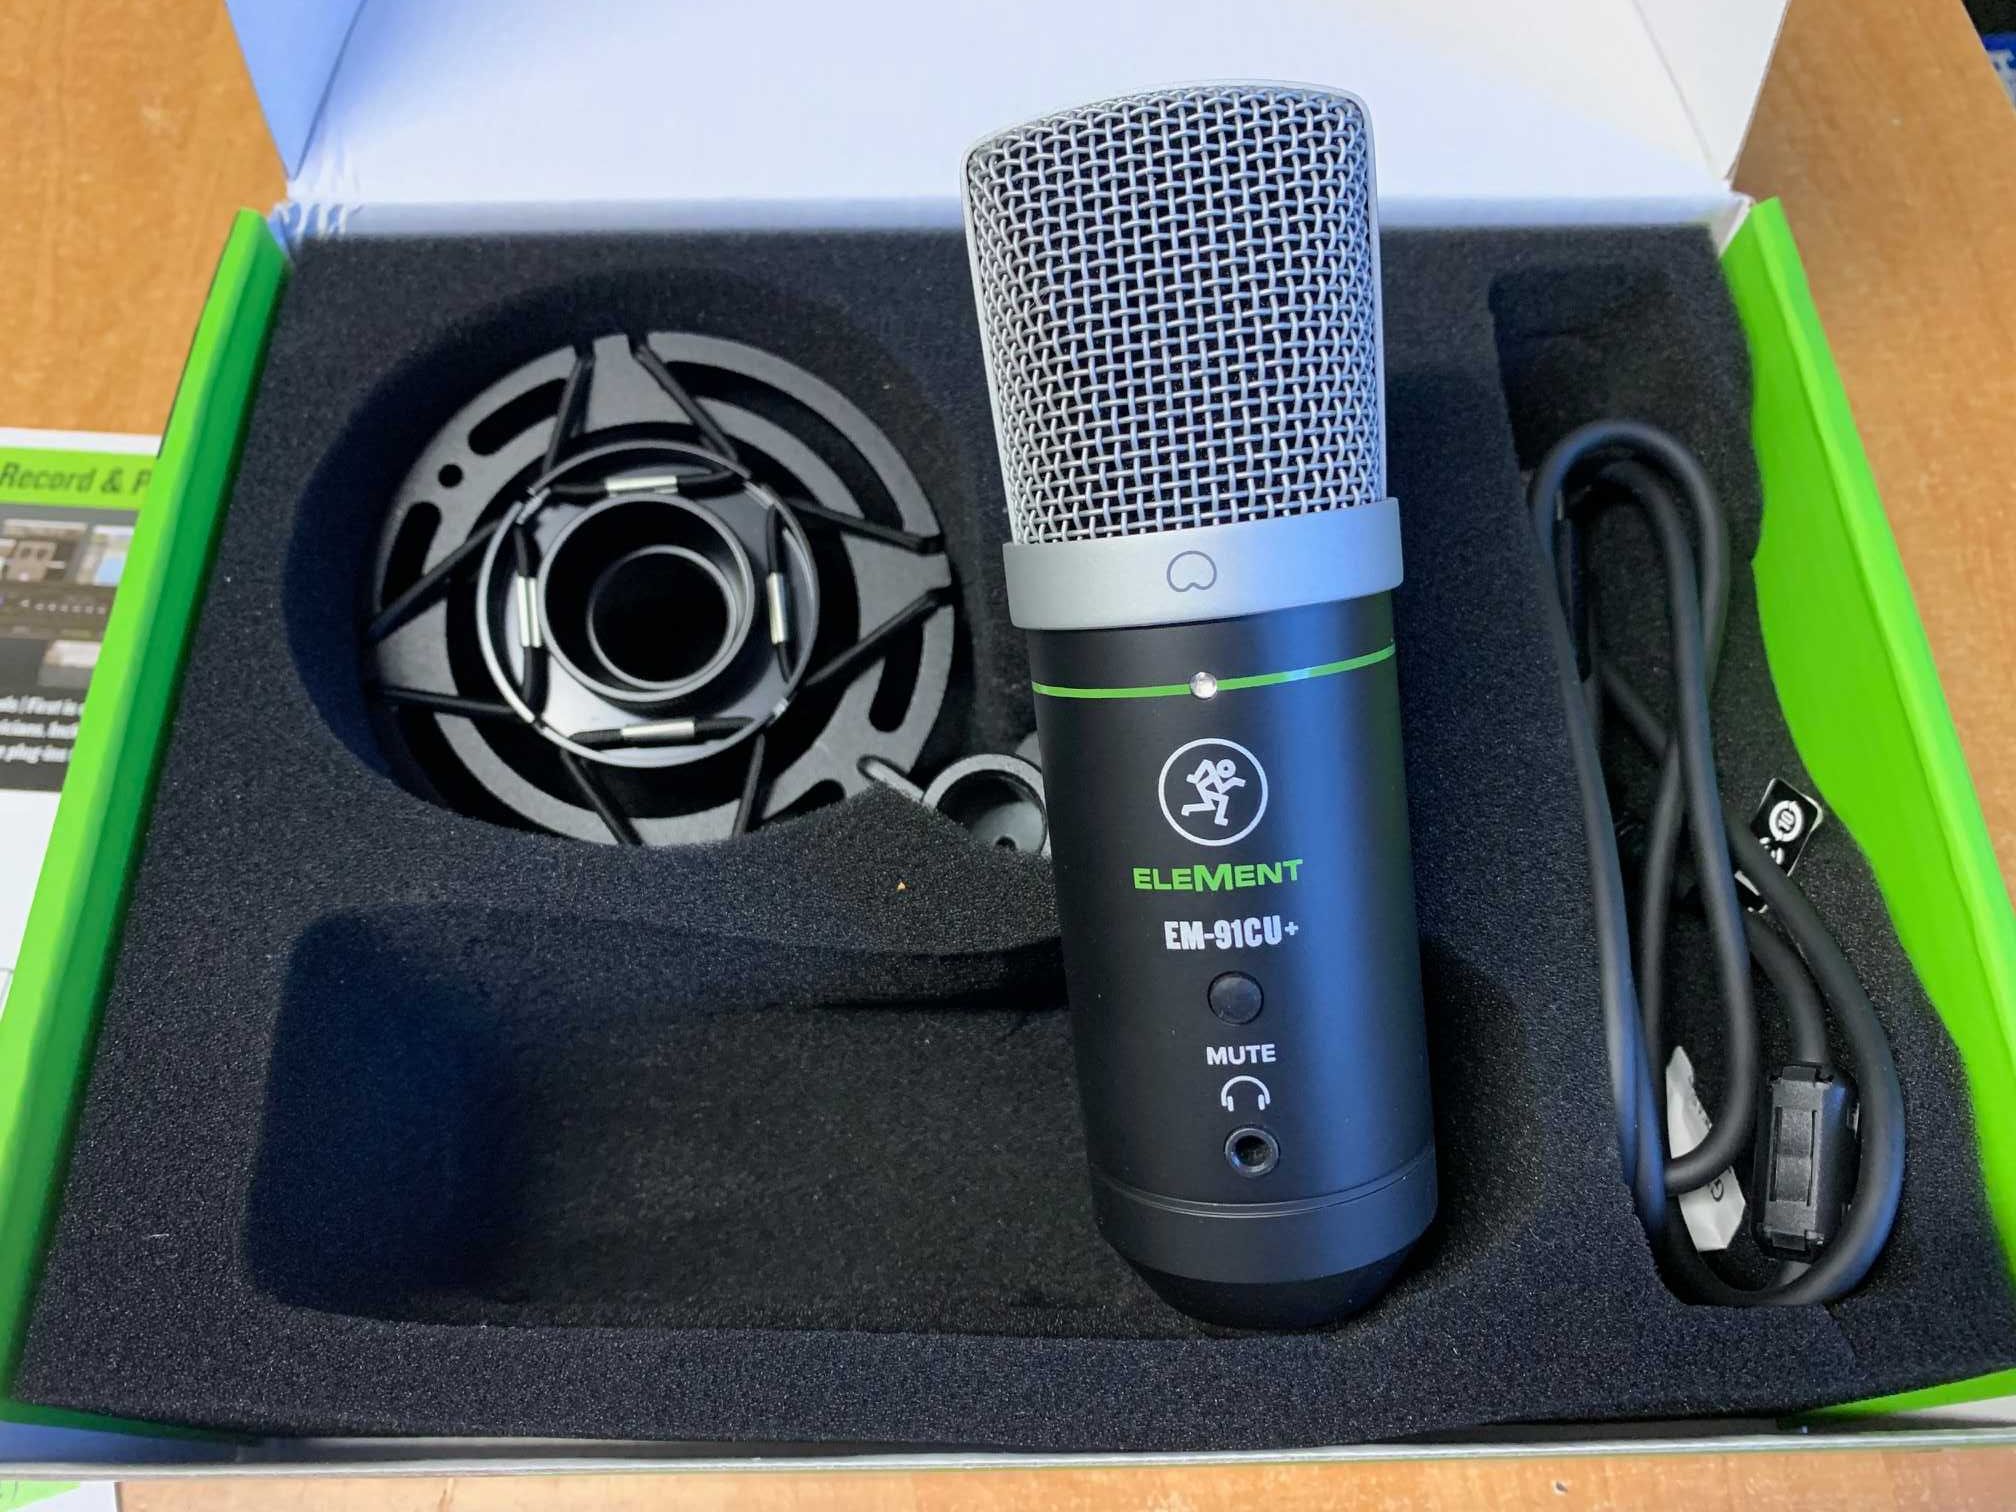 Mackie EM-91cu+ - studyjny mikrofon pojemnościowy